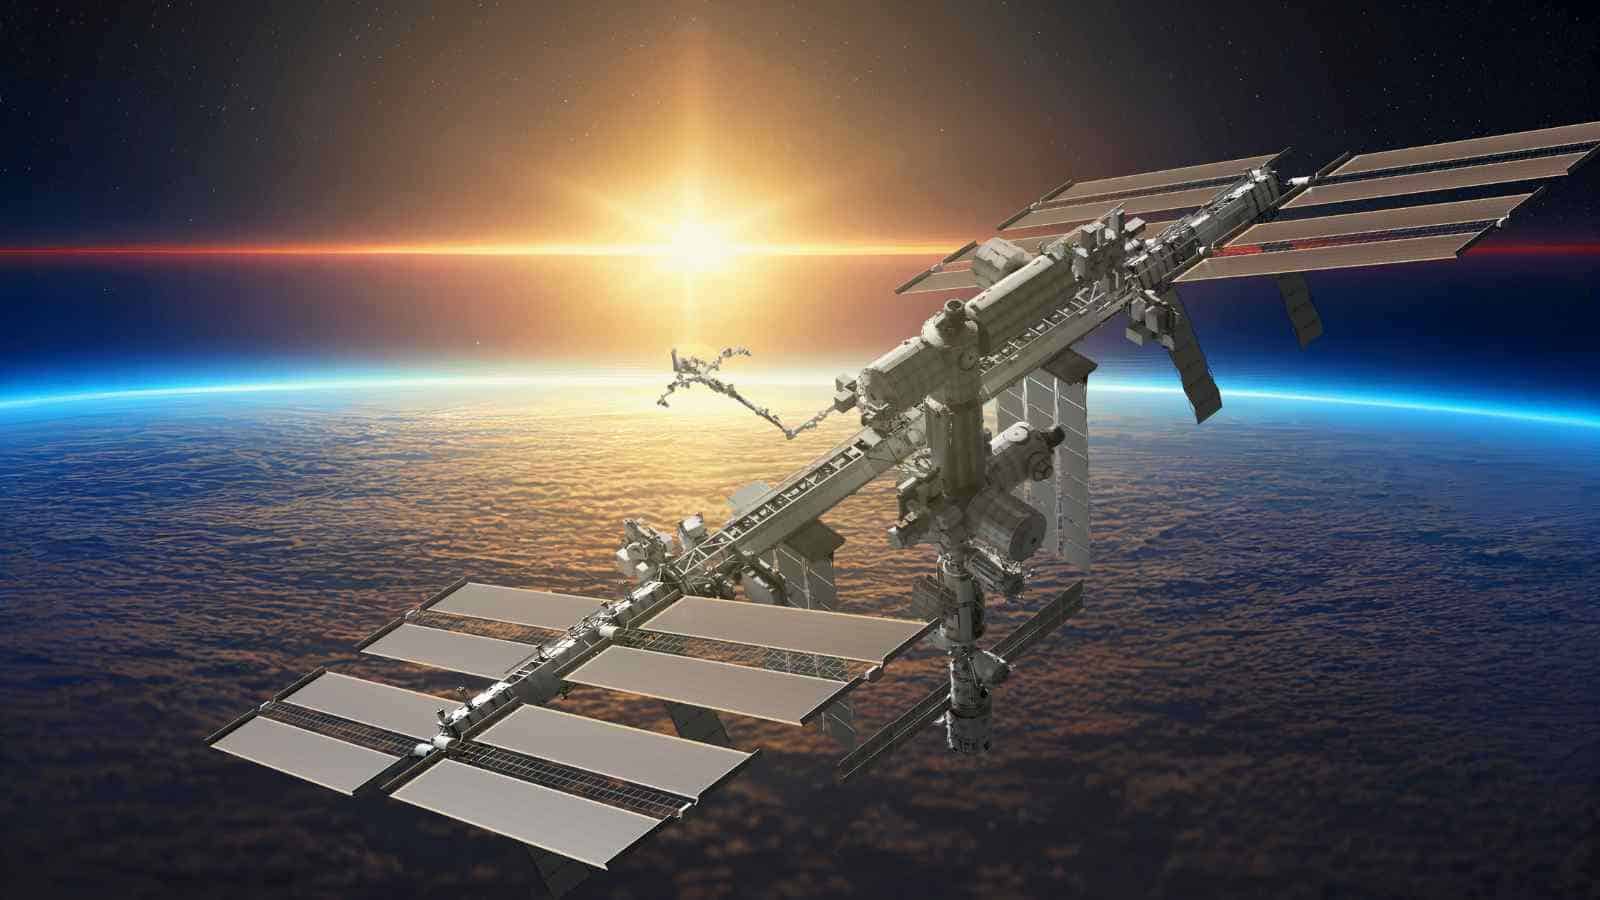 La lunga vita della ISS sta per giungere al termine, verrà fatta schiantare in sicurezza sulla Terra da una collaborazione tra NASA e SpaceX.